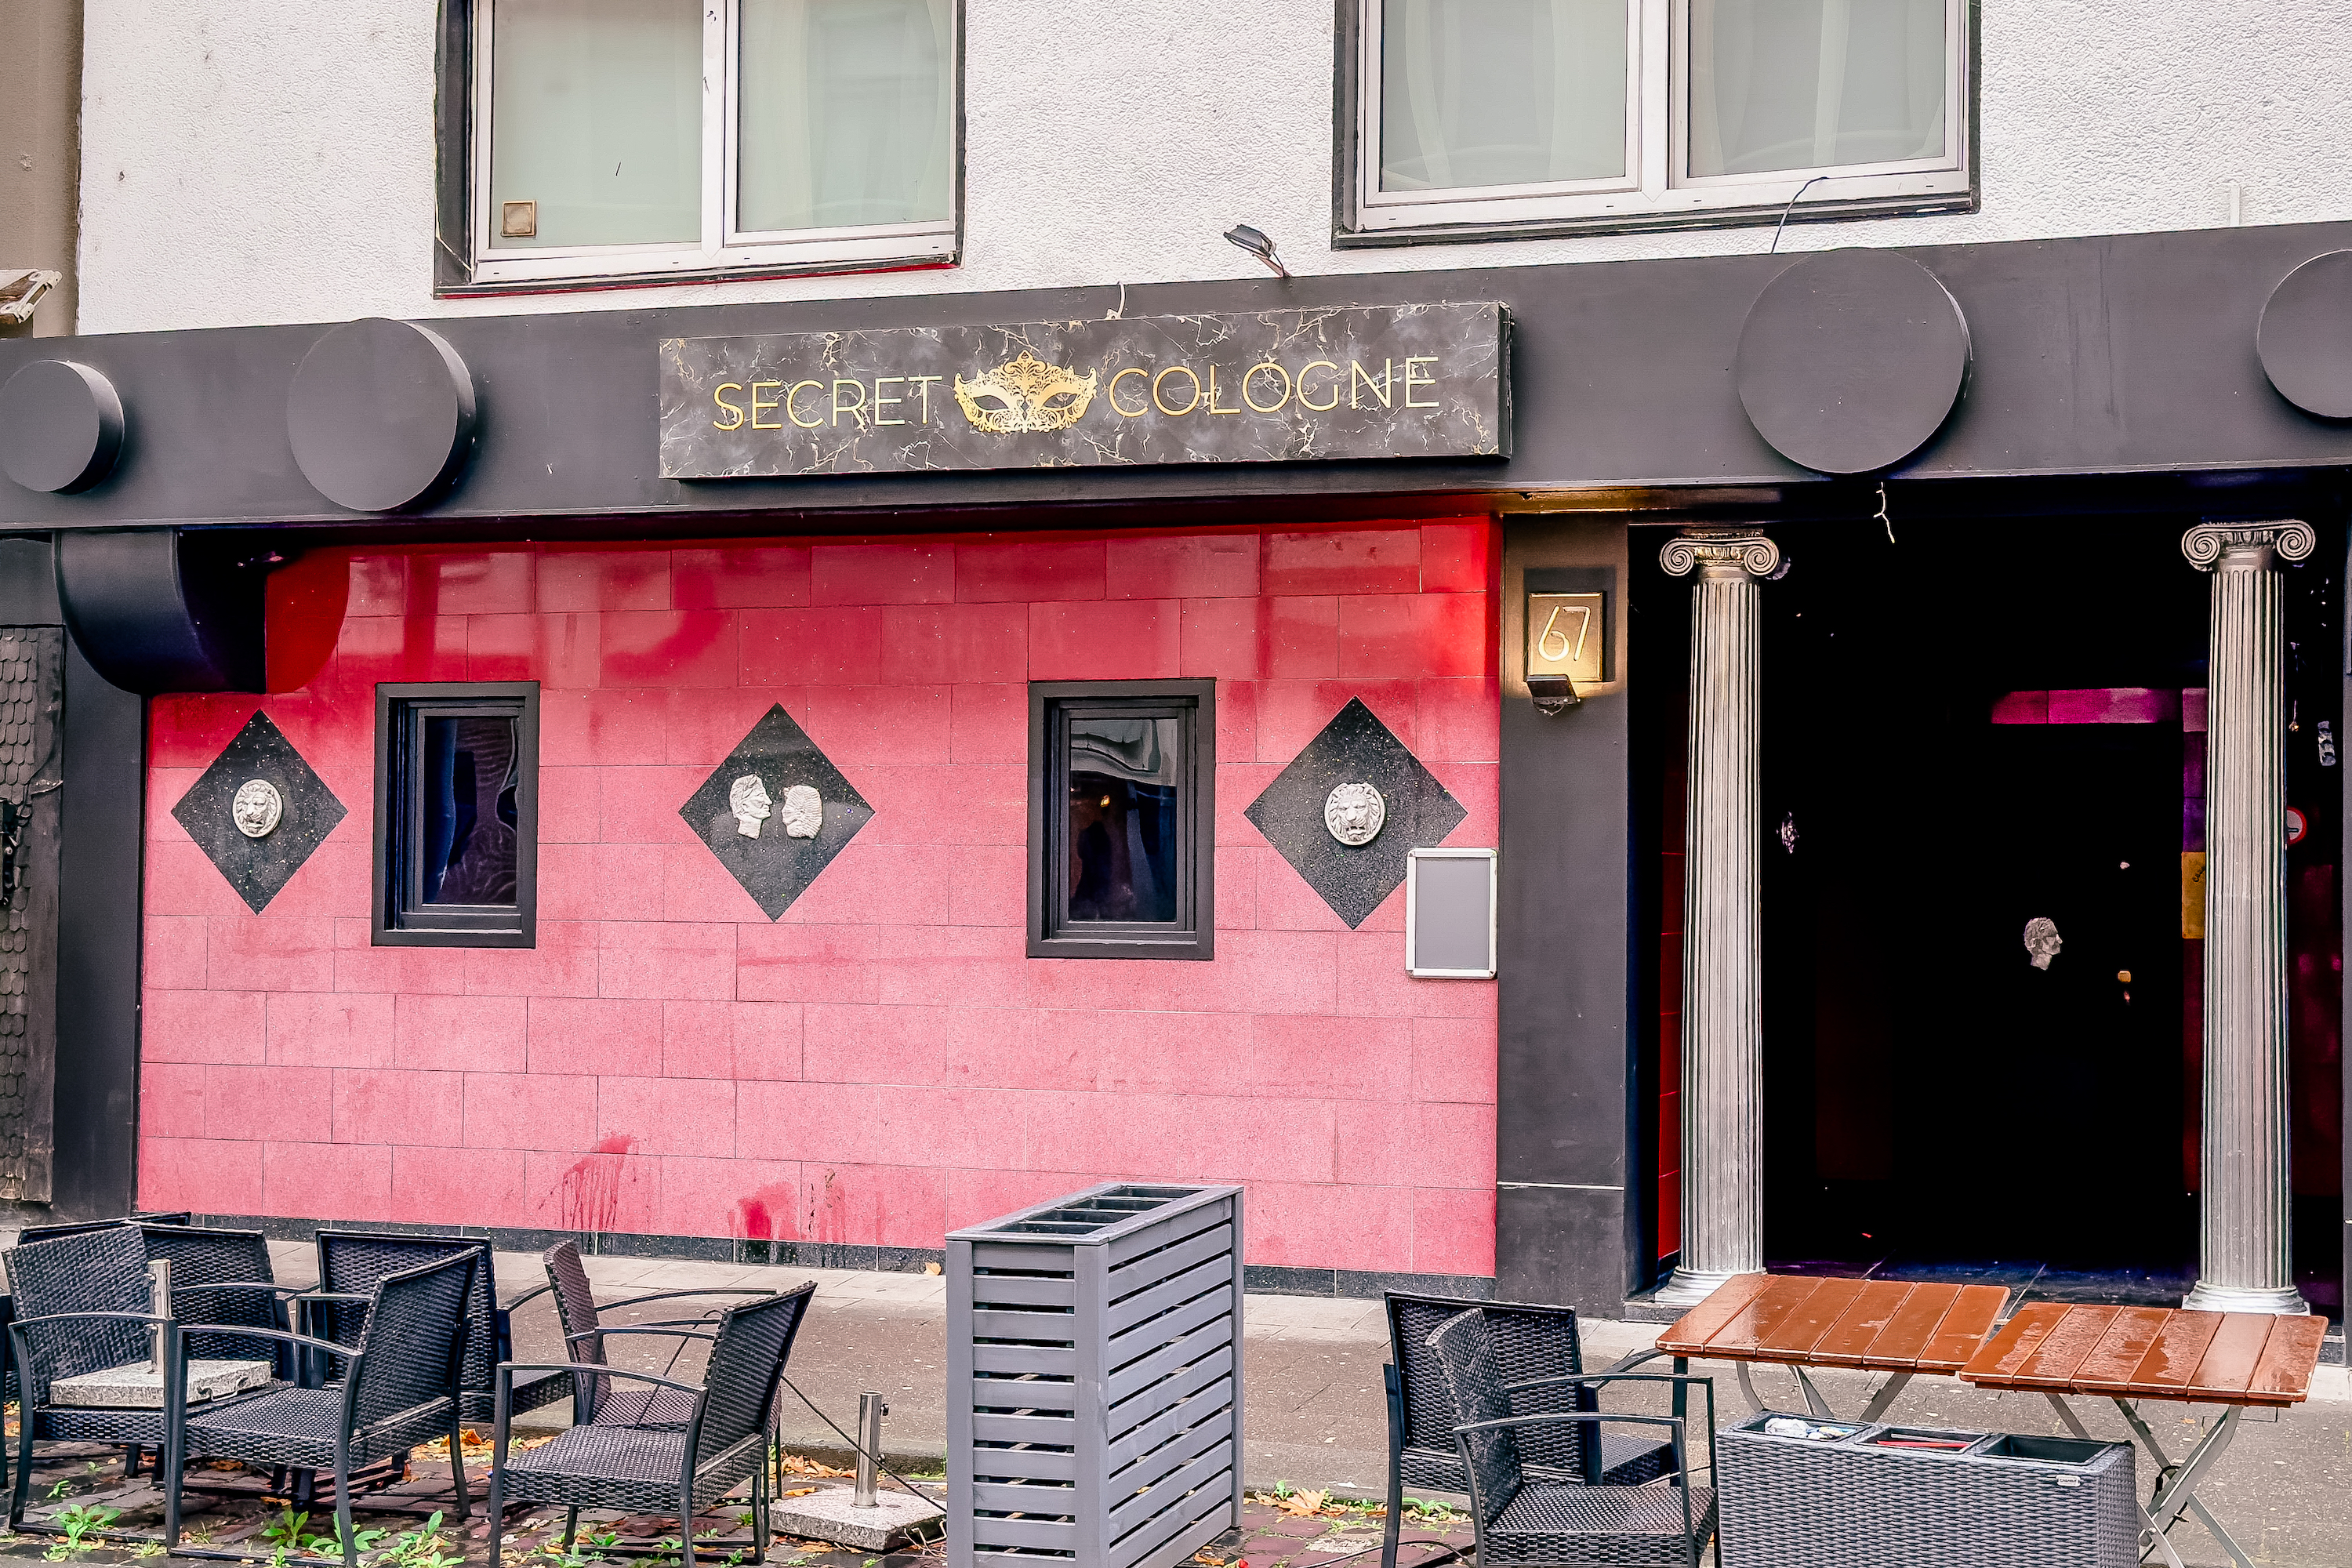 #Köln hakt nach: Was passiert eigentlich in Kölner Saunaclubs?